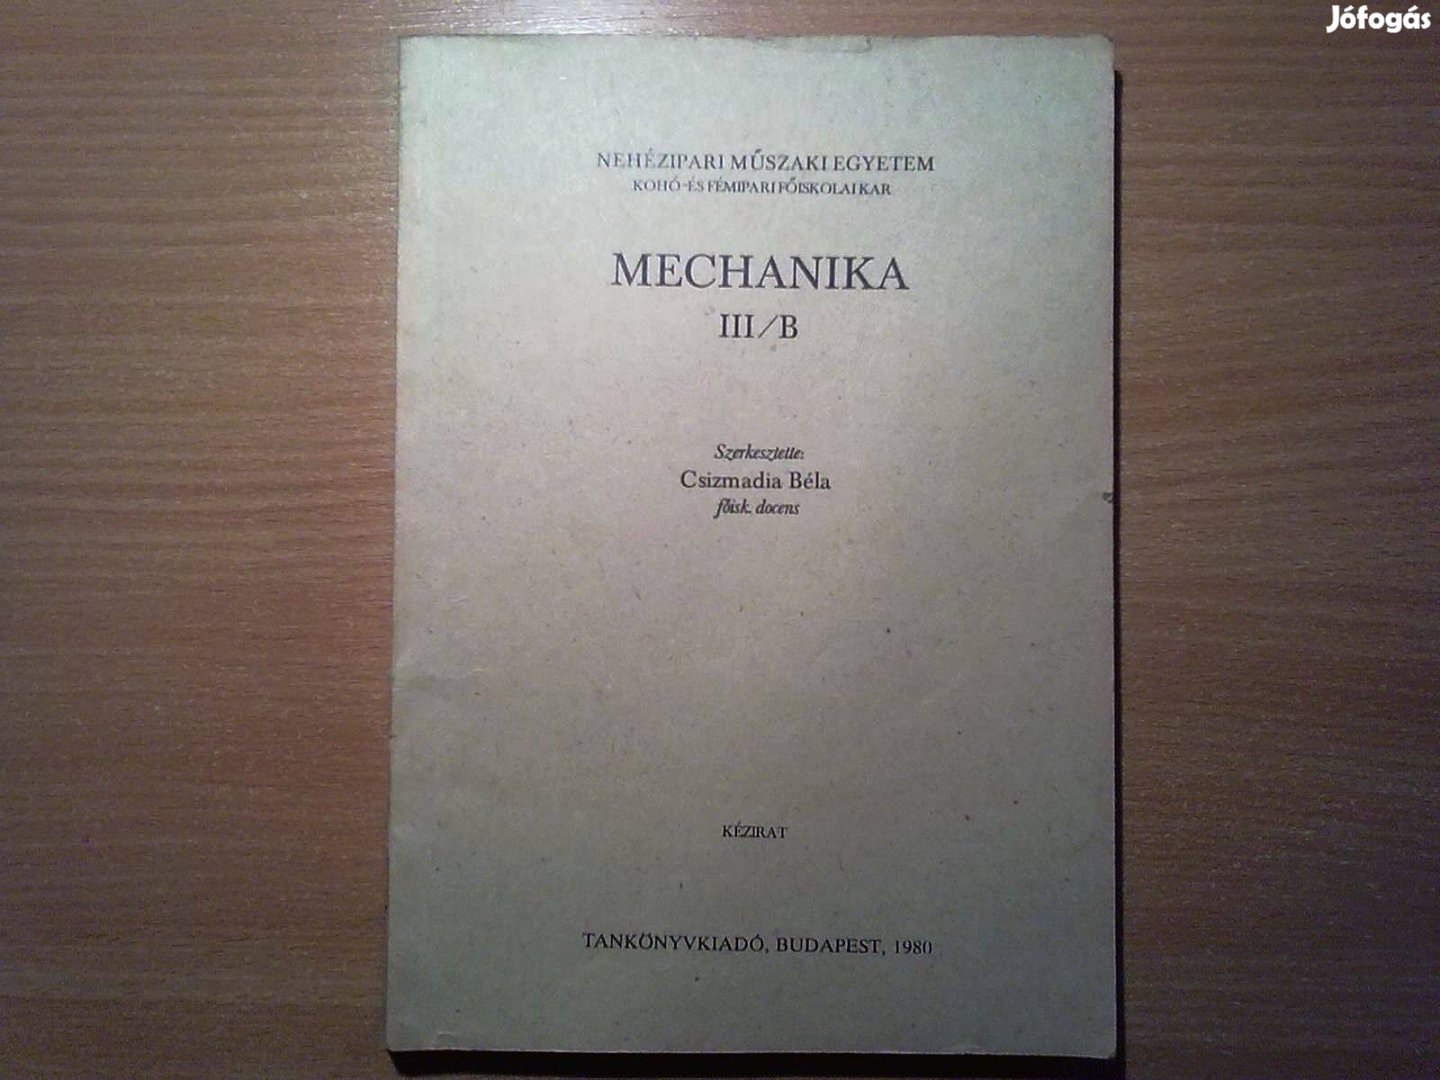 Csizmadia Béla: Mechanika III/B (Mozgó testek mechanikája)